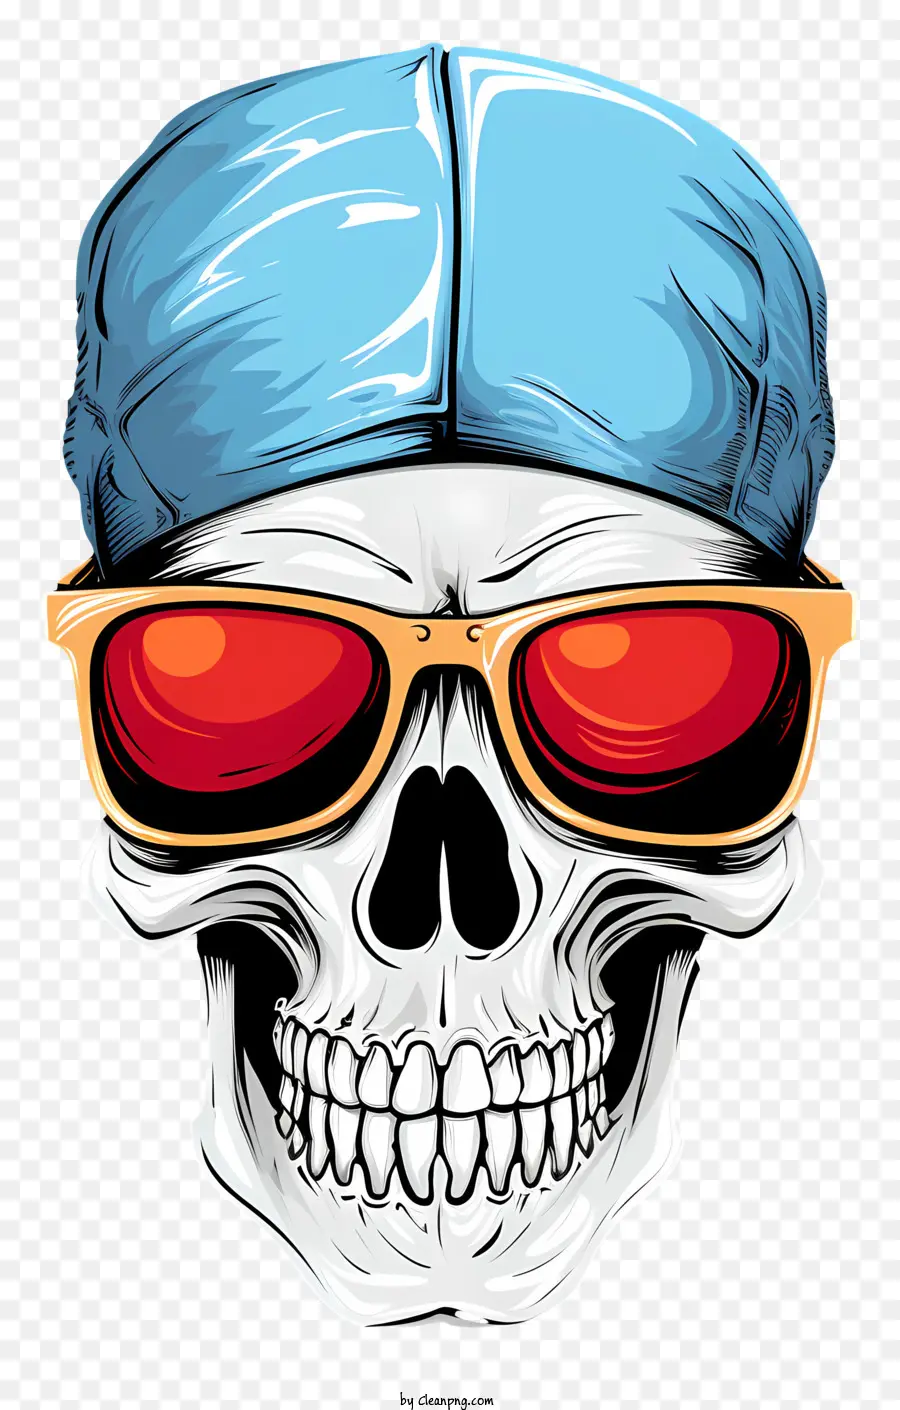 Cool Skull Vector Icona Occhiali da sole Skull Strame blu Red Glasses - Skull con occhiali da sole rossi e cappello blu significa pericolo